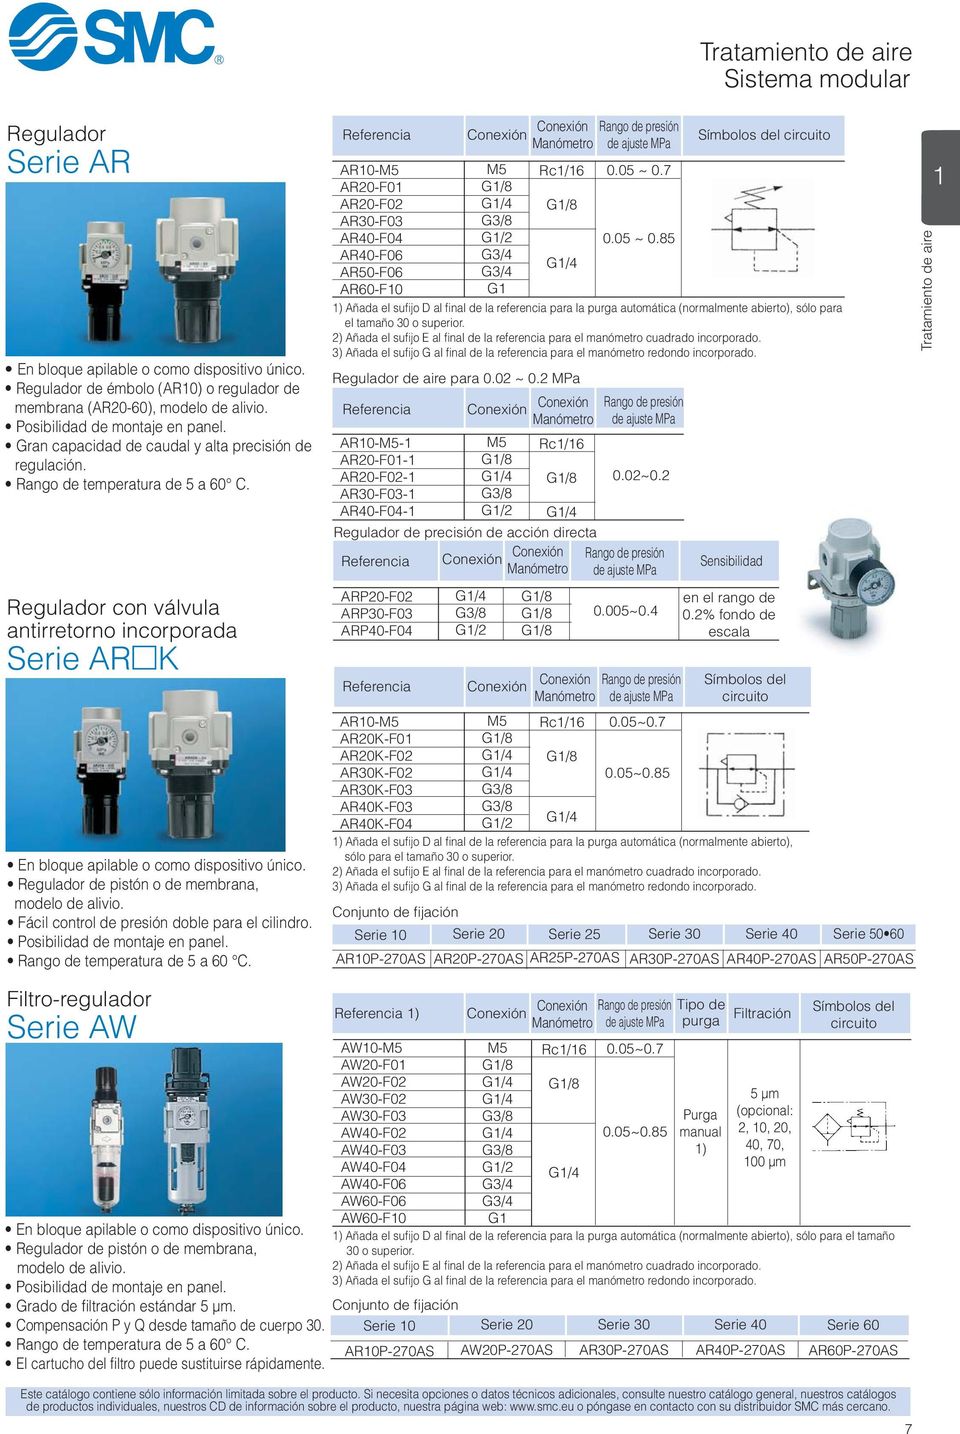 Regulador con válvula antirretorno incorporada Serie AR K En bloque apilable o como dispositivo único. Regulador de pistón o de membrana, modelo de alivio.